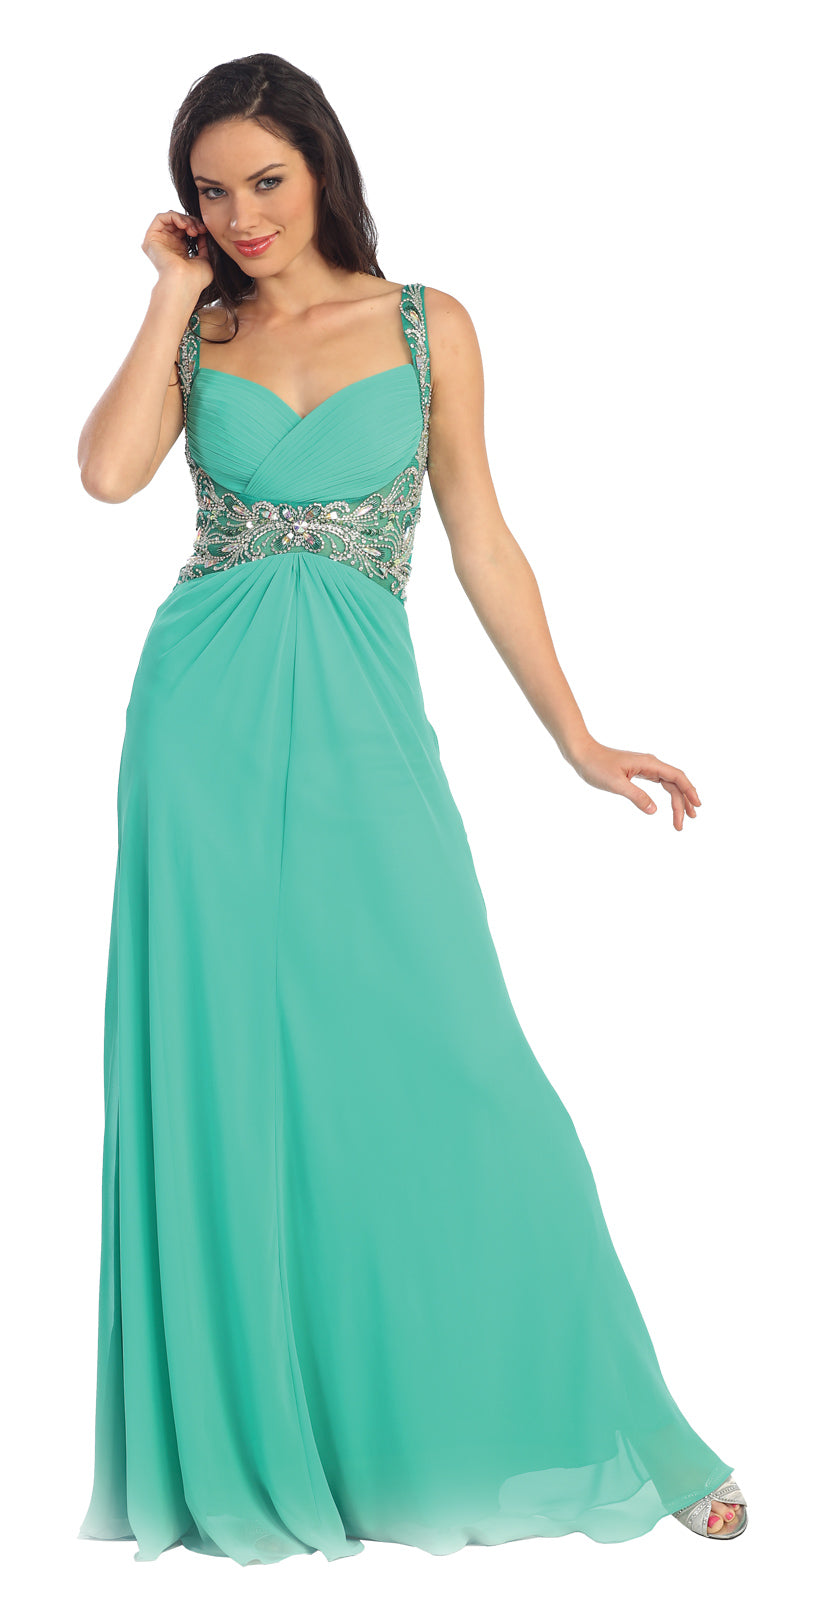 Jewel Embellished Chiffon Long Prom Dress Formal - The Dress Outlet Elizabeth K GREEN